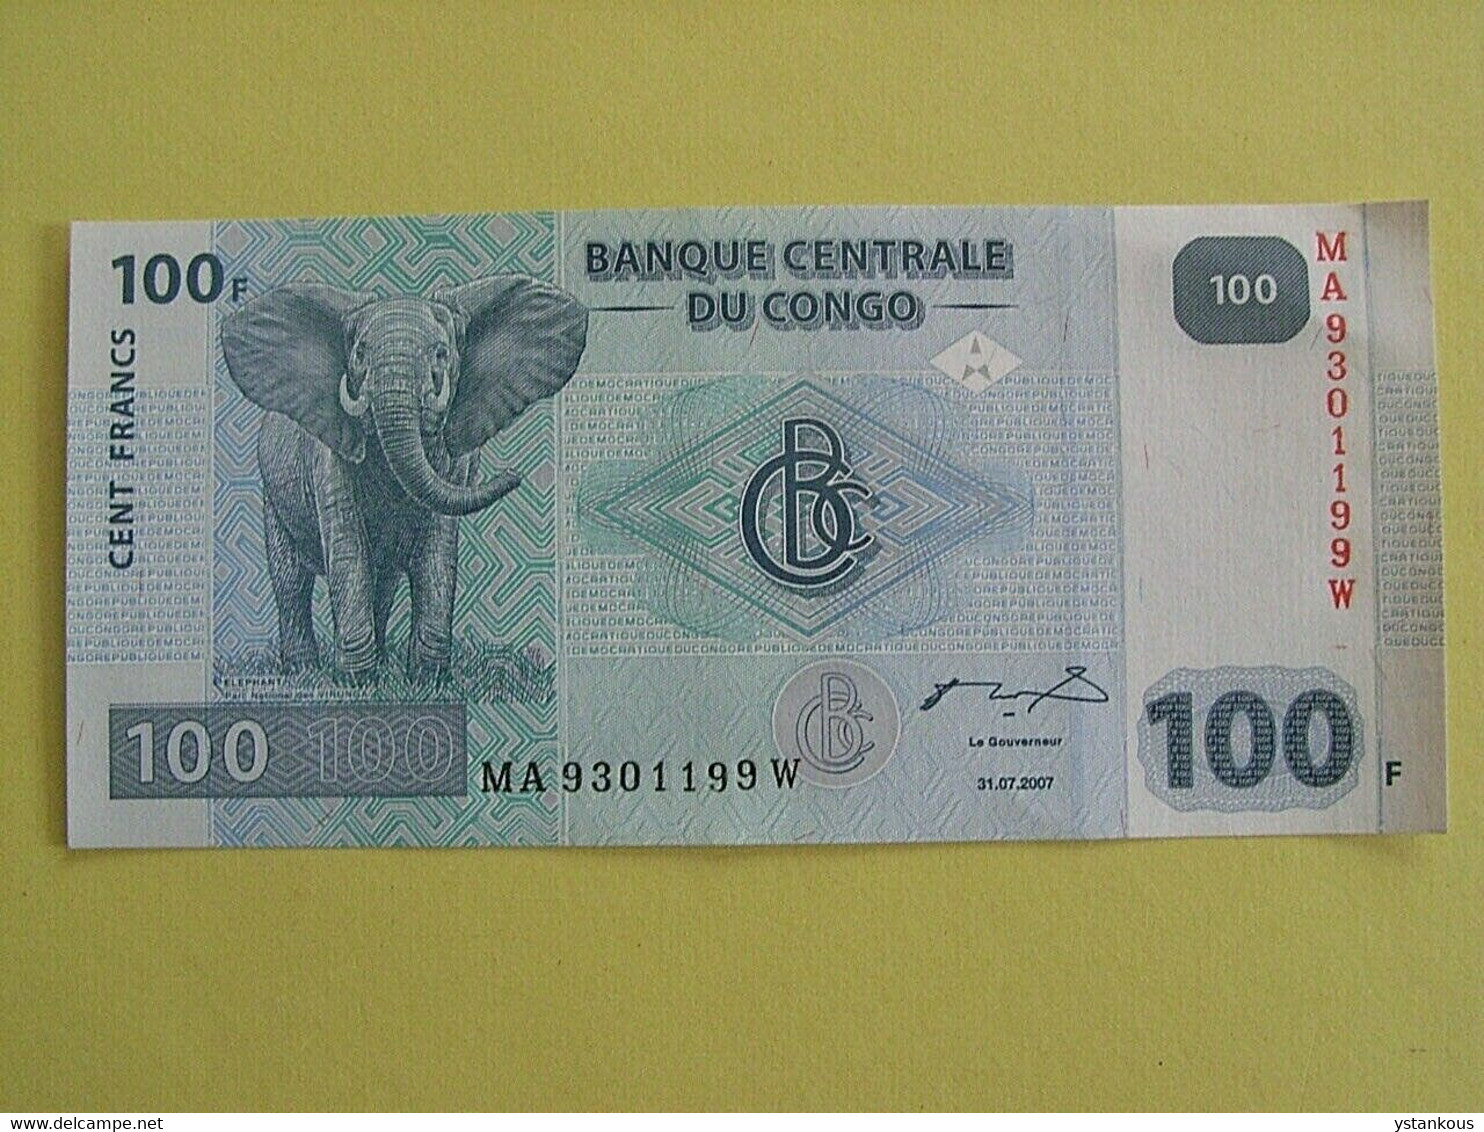 Billet De 100 Francs 2007 Banque Centrale Du Congo. - Non Classificati